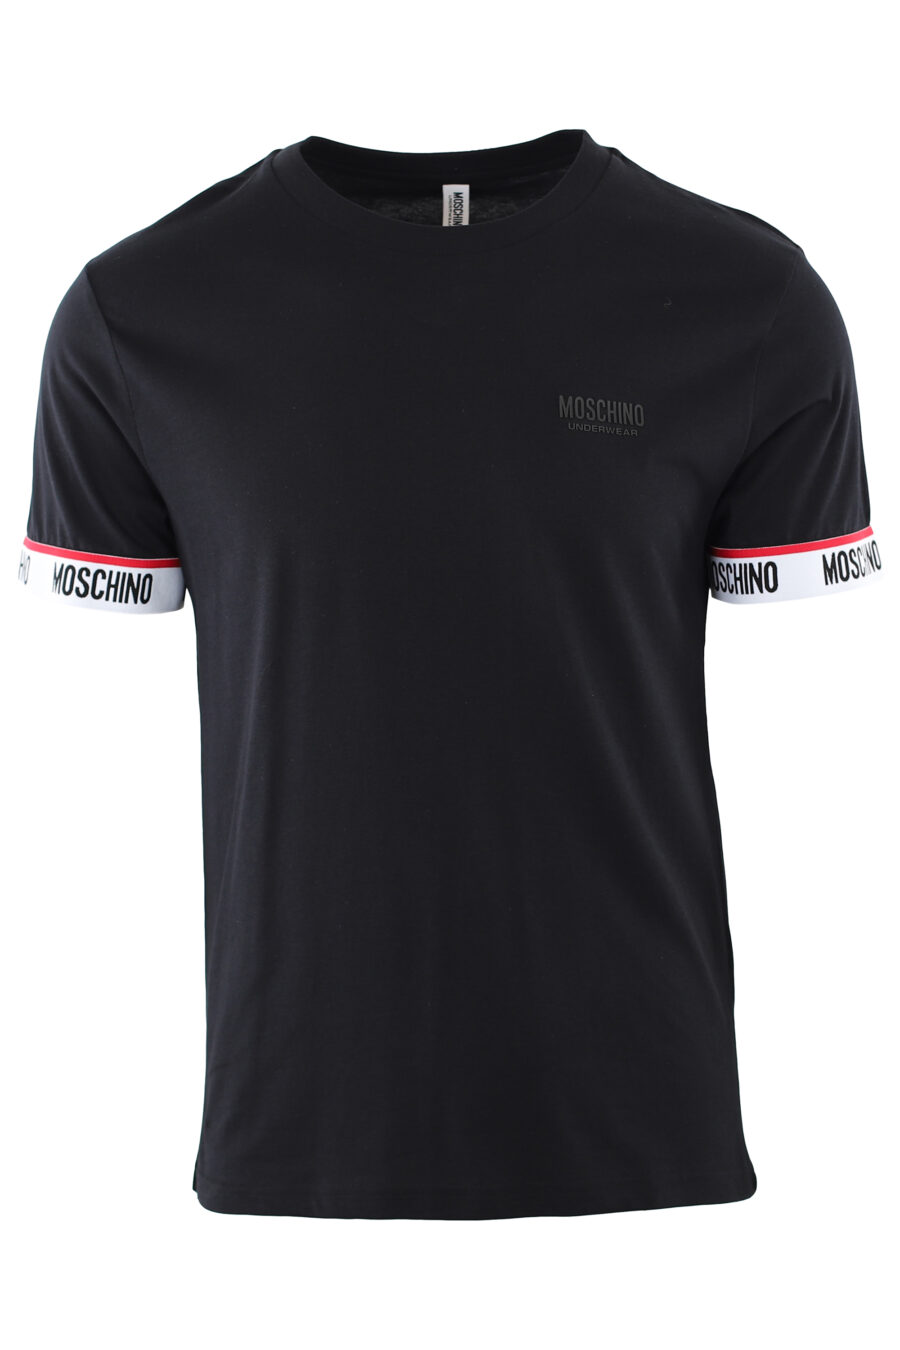 Camiseta negra con logotipo en cinta hombros mangas - IMG 7423